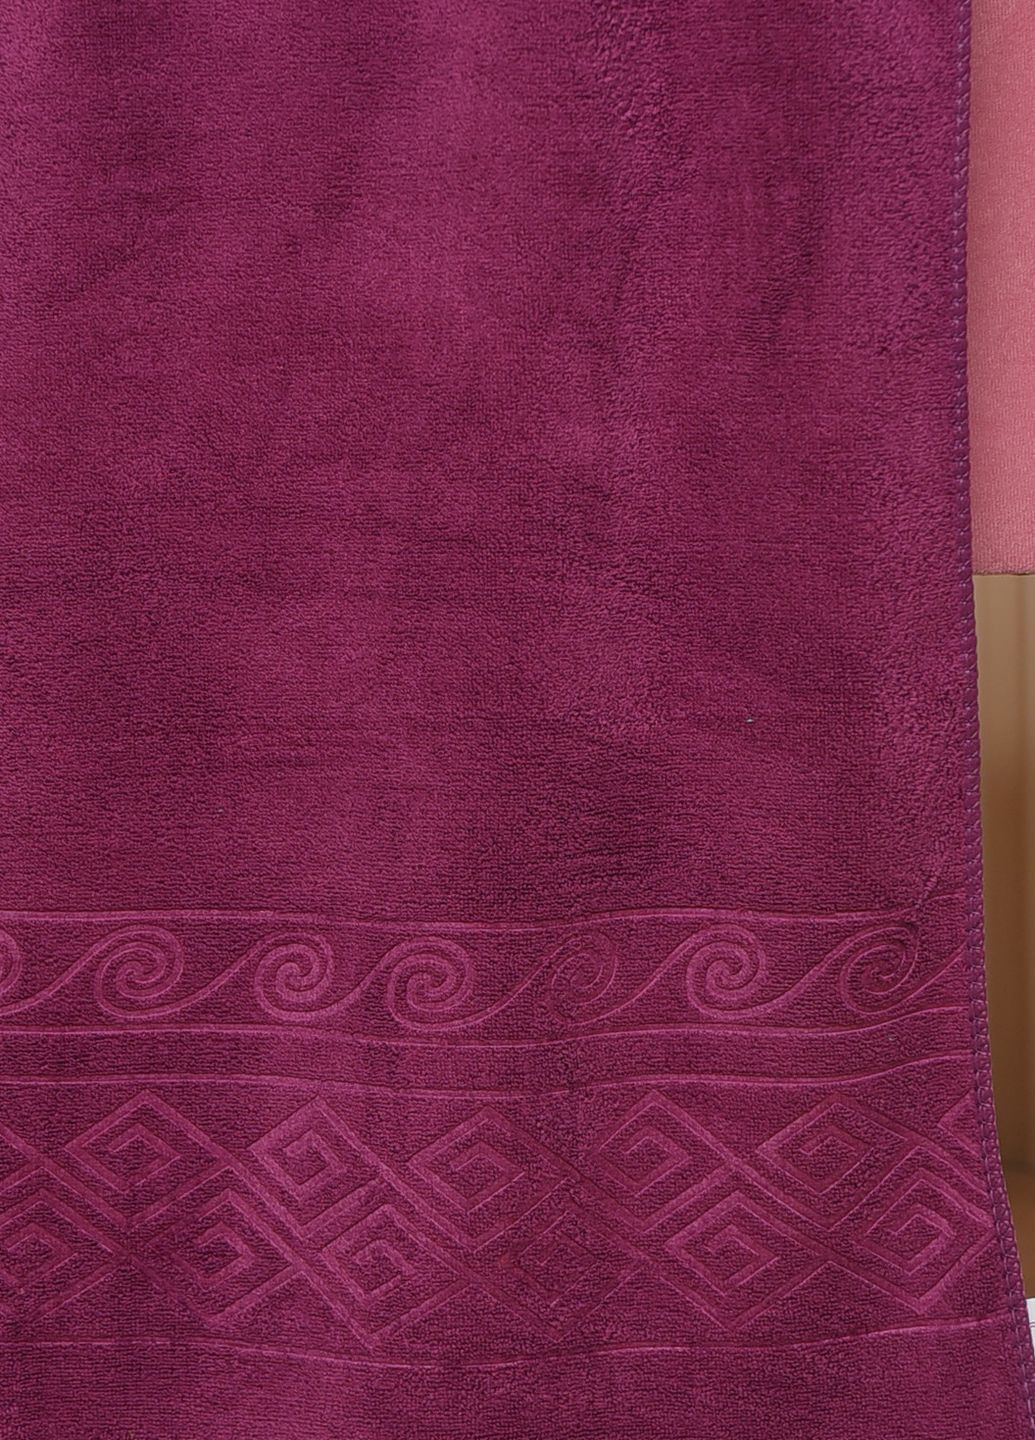 Let's Shop полотенце для лица микрофибра фиолетового цвета однотонный фиолетовый производство - Турция